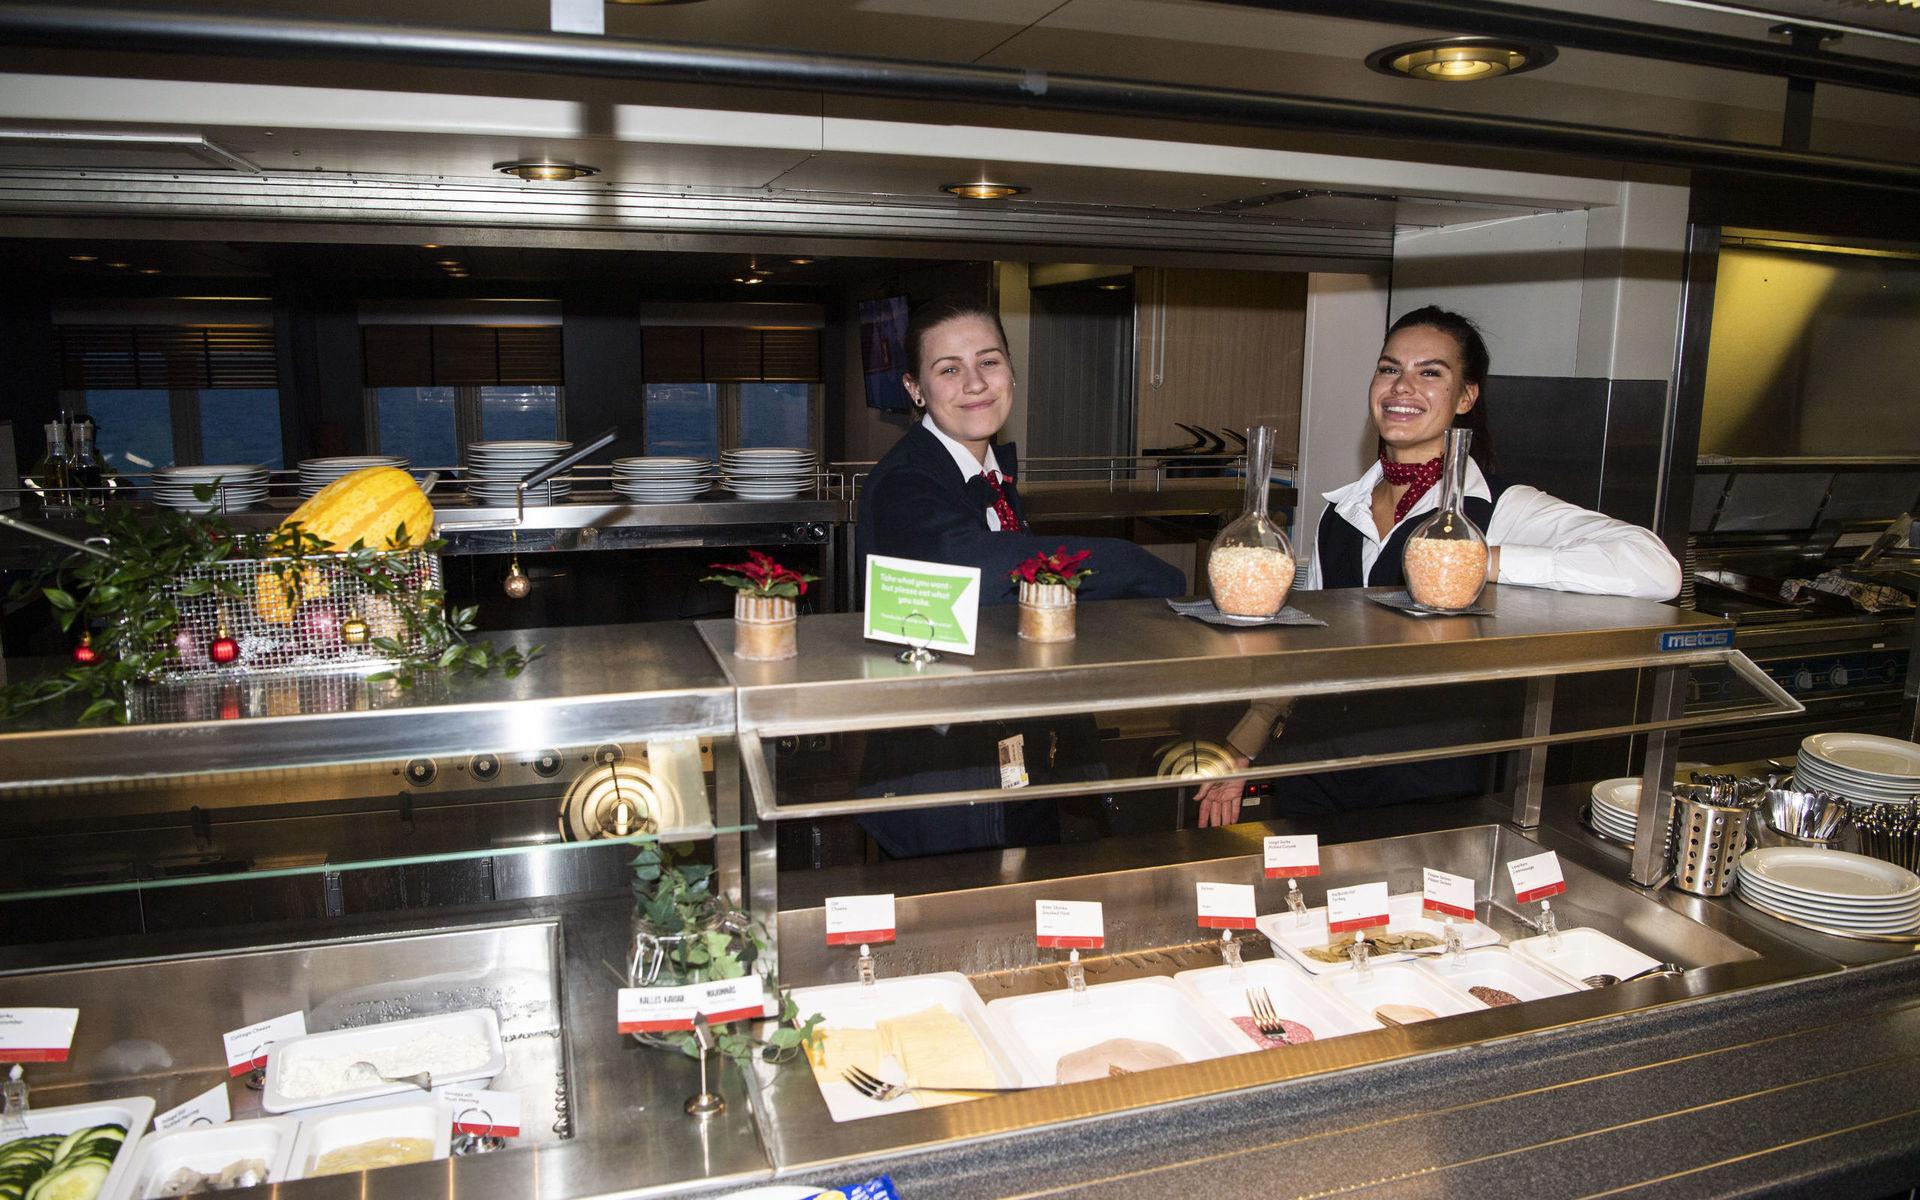 Den som väljer morgonfärjan från Halmstad kan inleda med en rejäl frukostbuffé i båtens restaurang. Restaurangbiträdena Klara Carlsson och Saara Köhli, båda boende i Halmstad, hälsar välkomna.